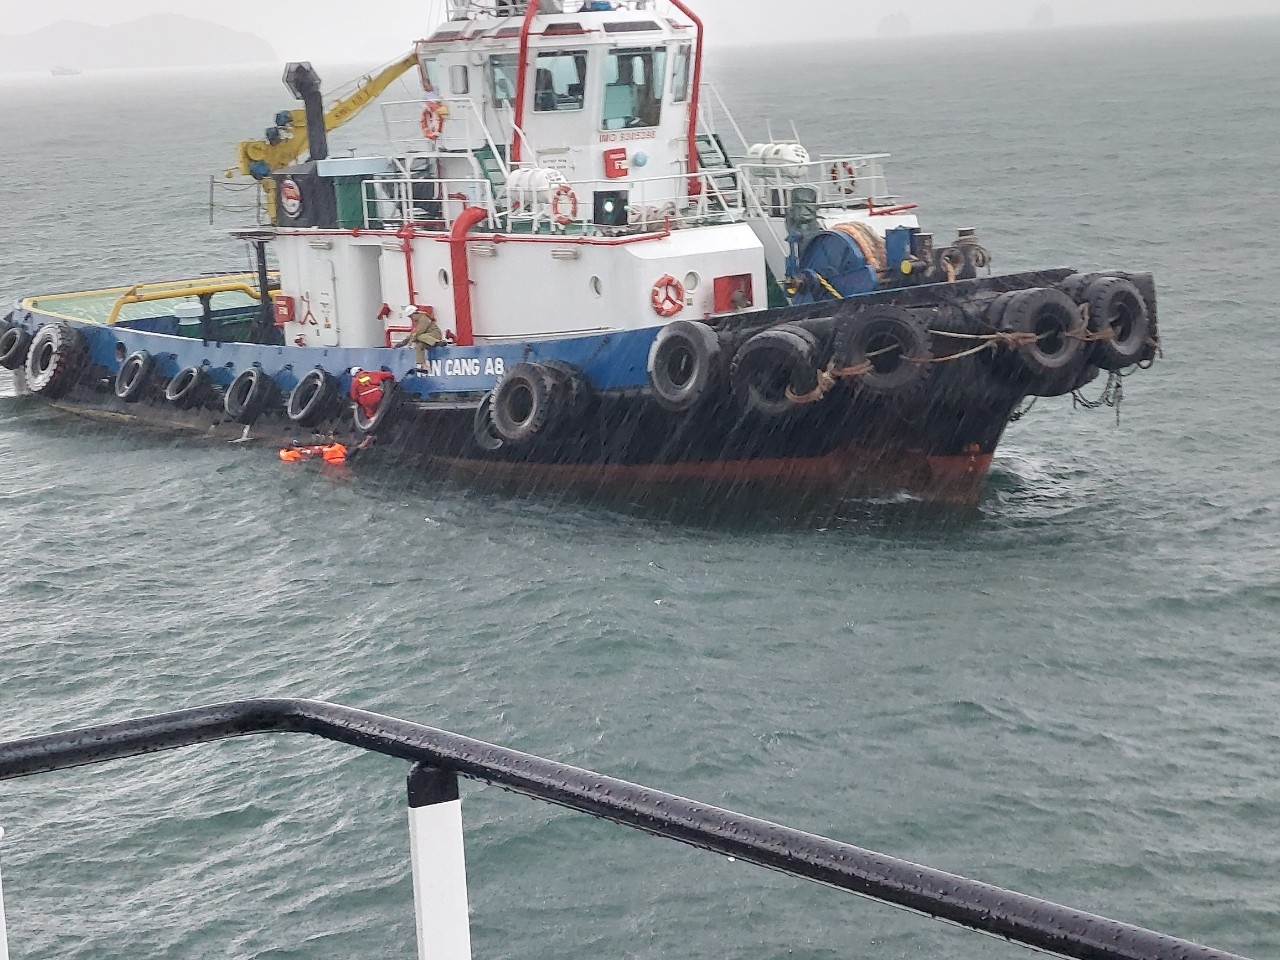 Cứu nạn 2 thuyền viên trên tàu chở cát bị chìm tại phao 4 khu vực Hải Phòng